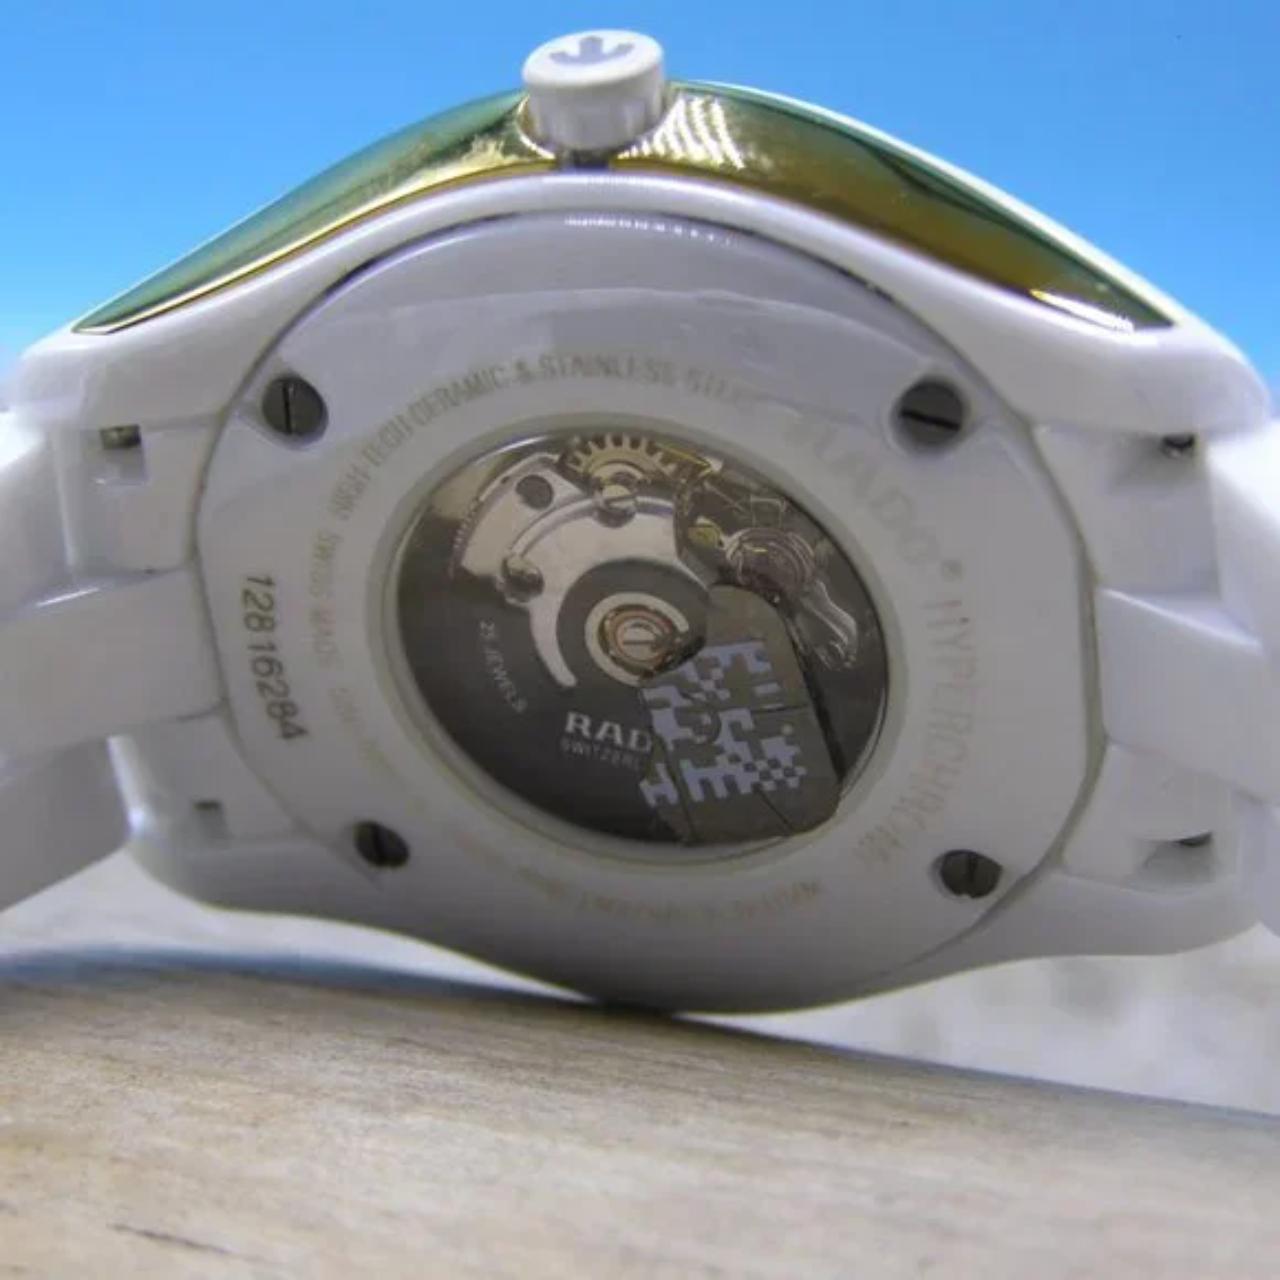 Product Image 2 - Rado Hyperchrome White Women's Watch

White